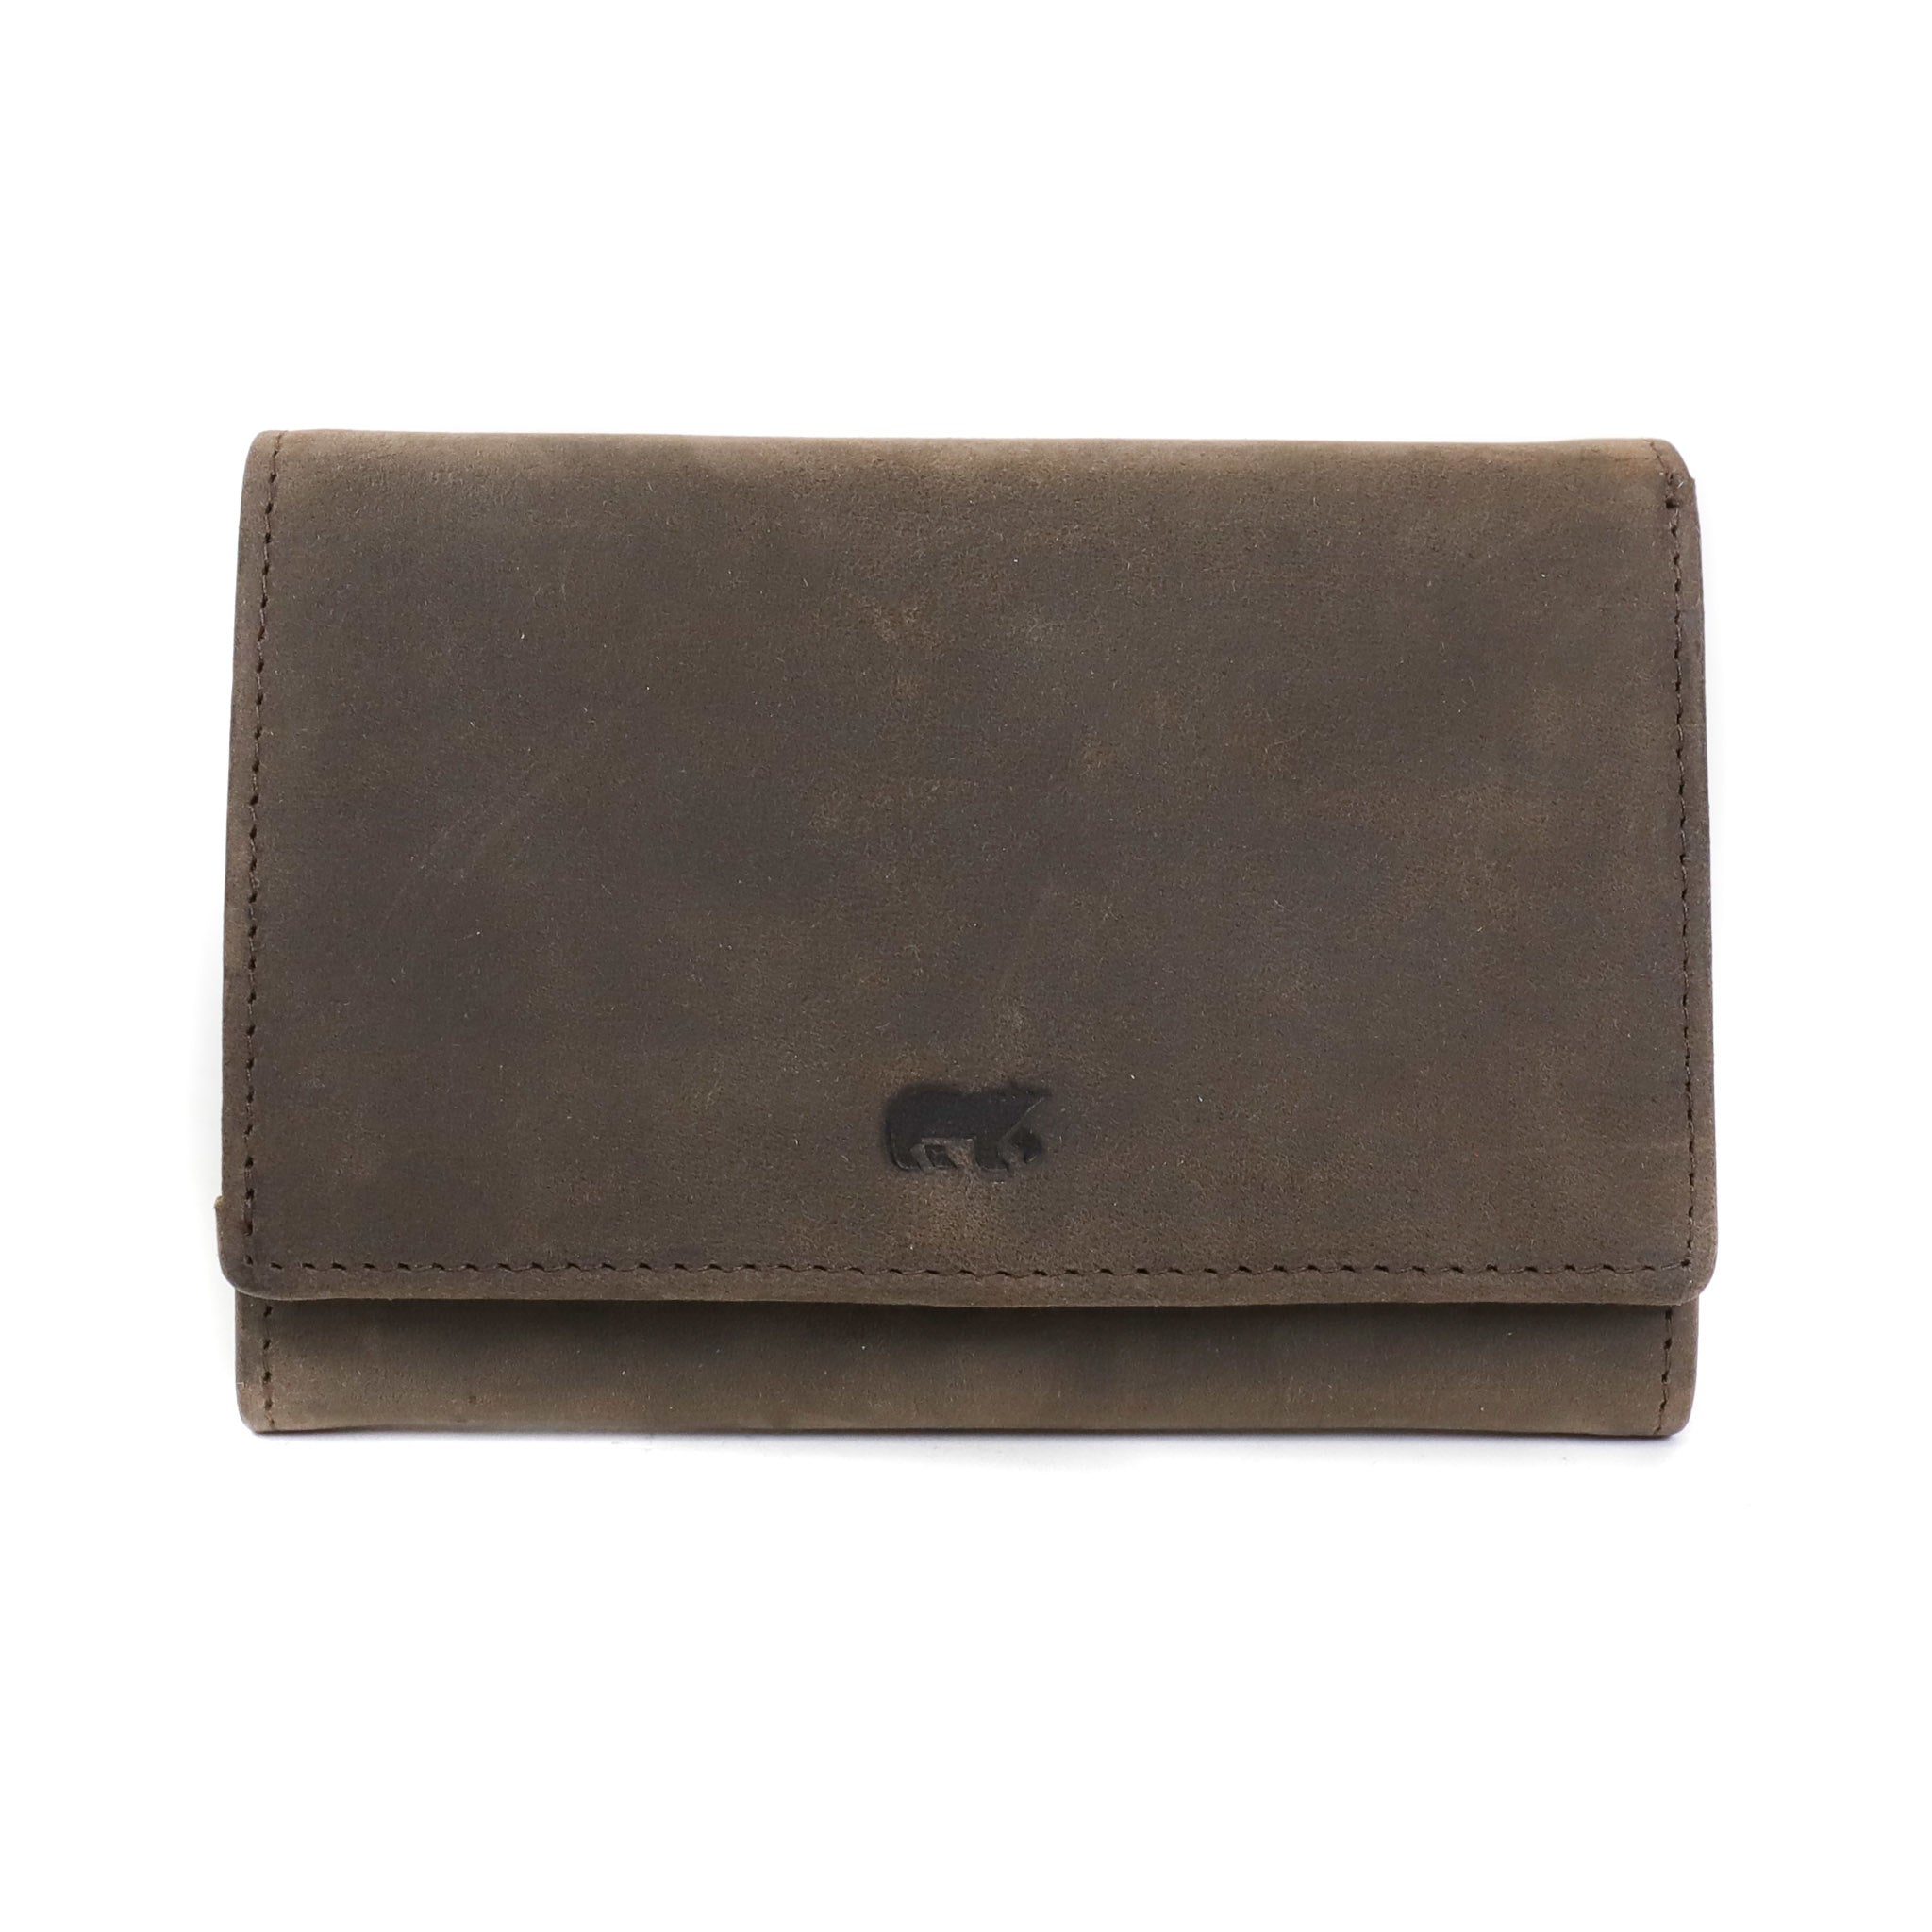 Wrap wallet 'Laila' brown - HD 7676